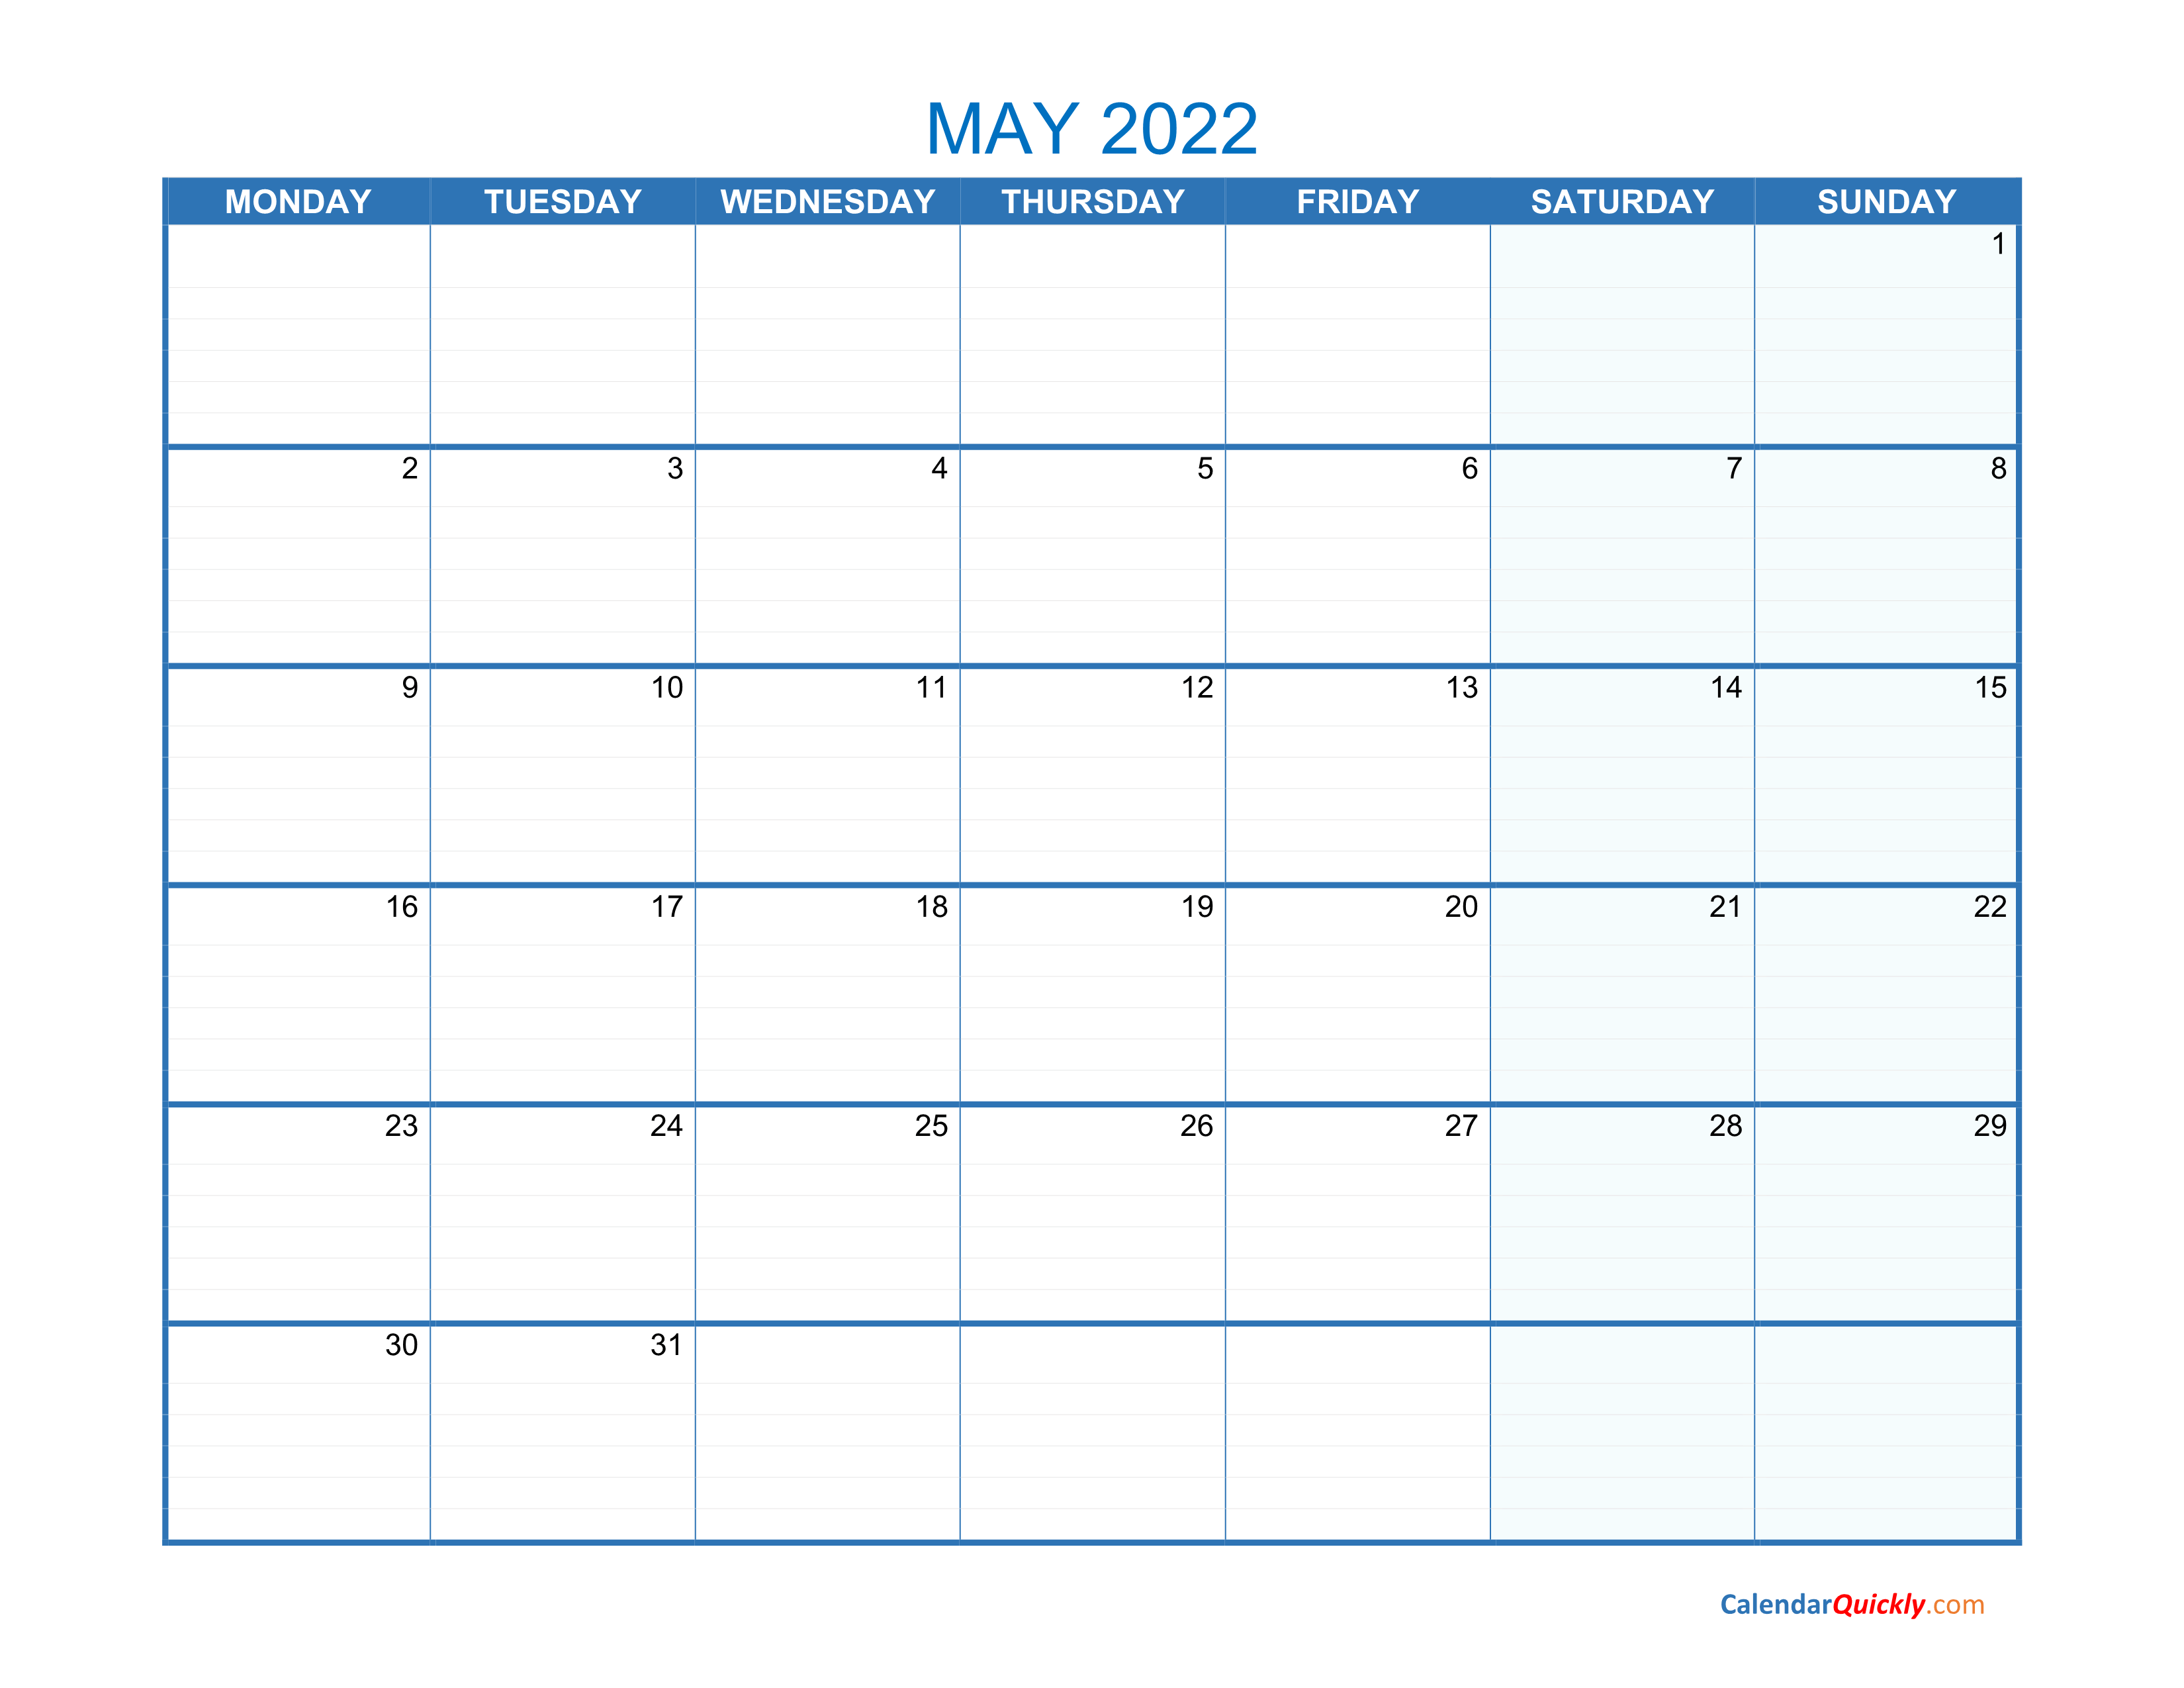 May Monday 2022 Blank Calendar Calendar Quickly